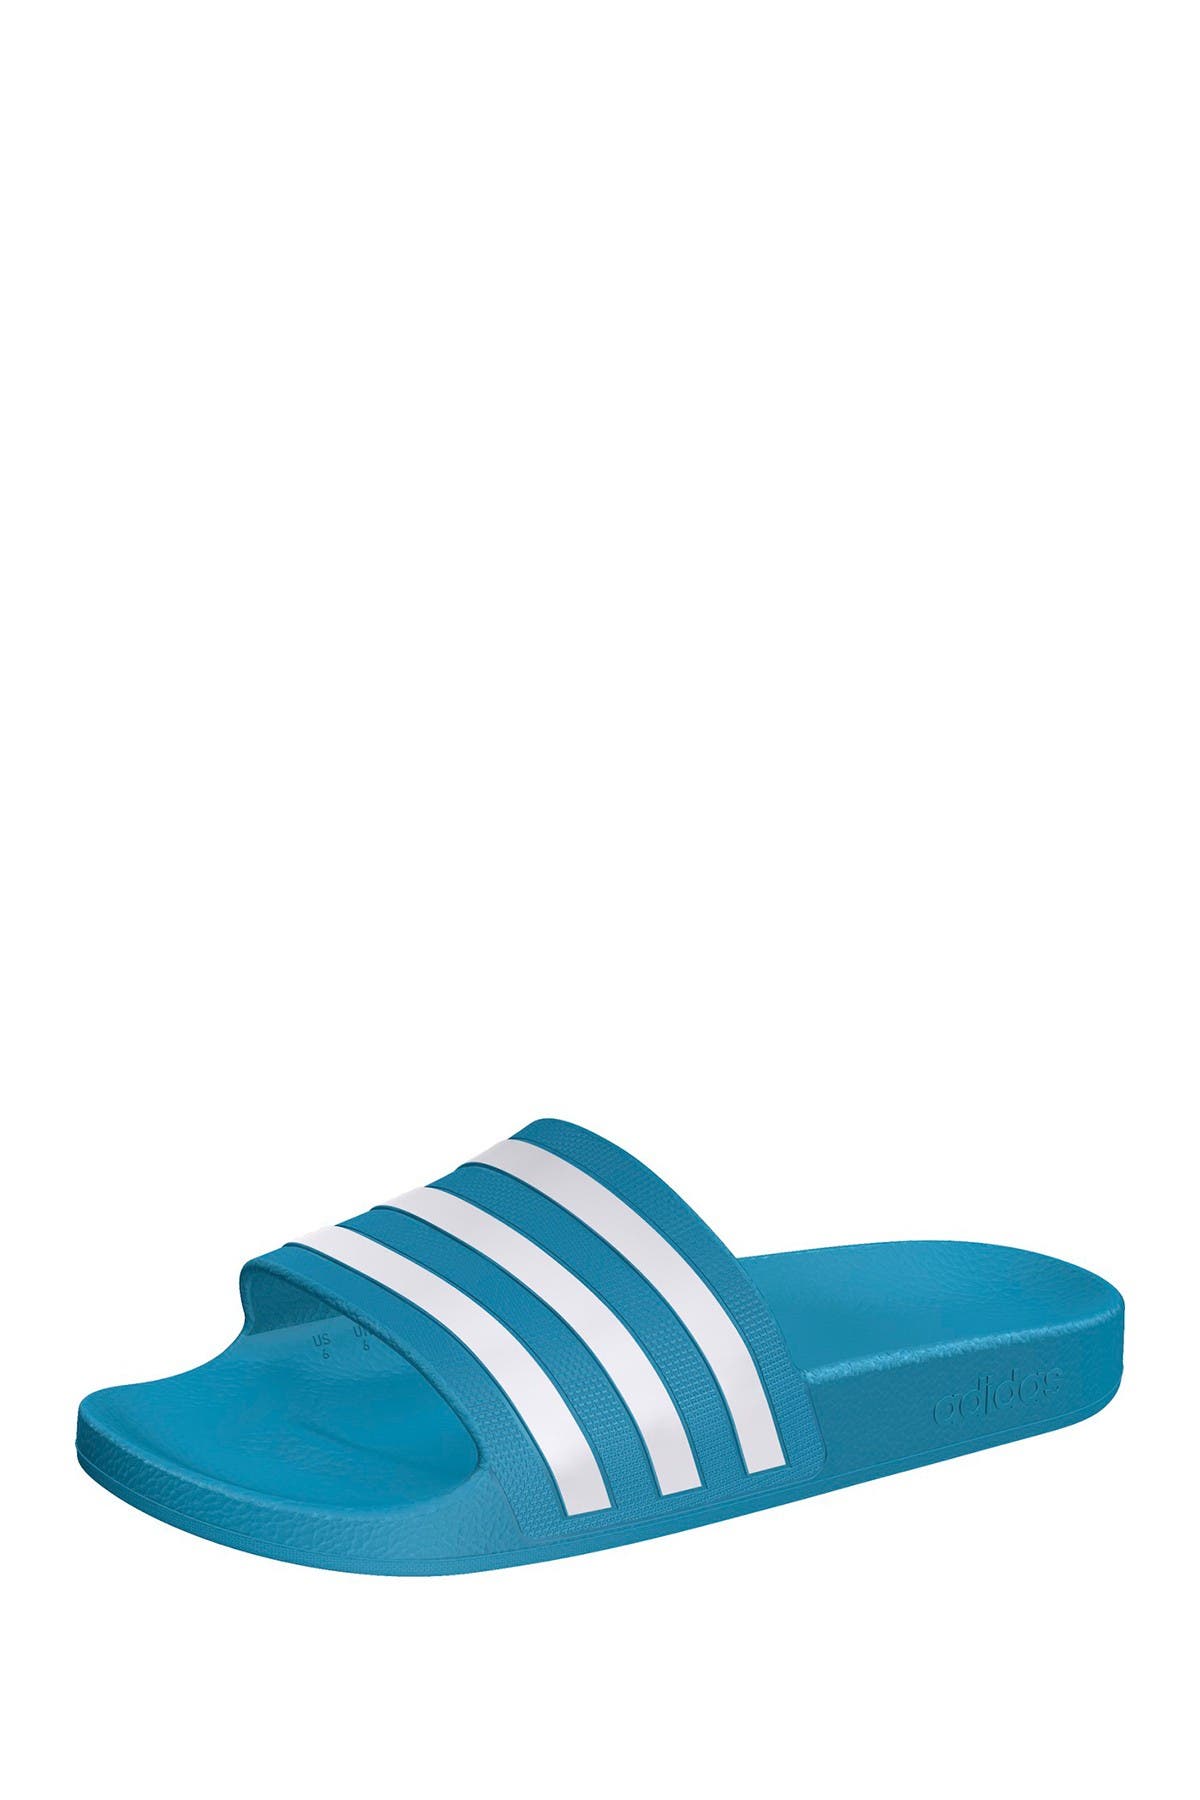 adidas adilette aqua slide sandal